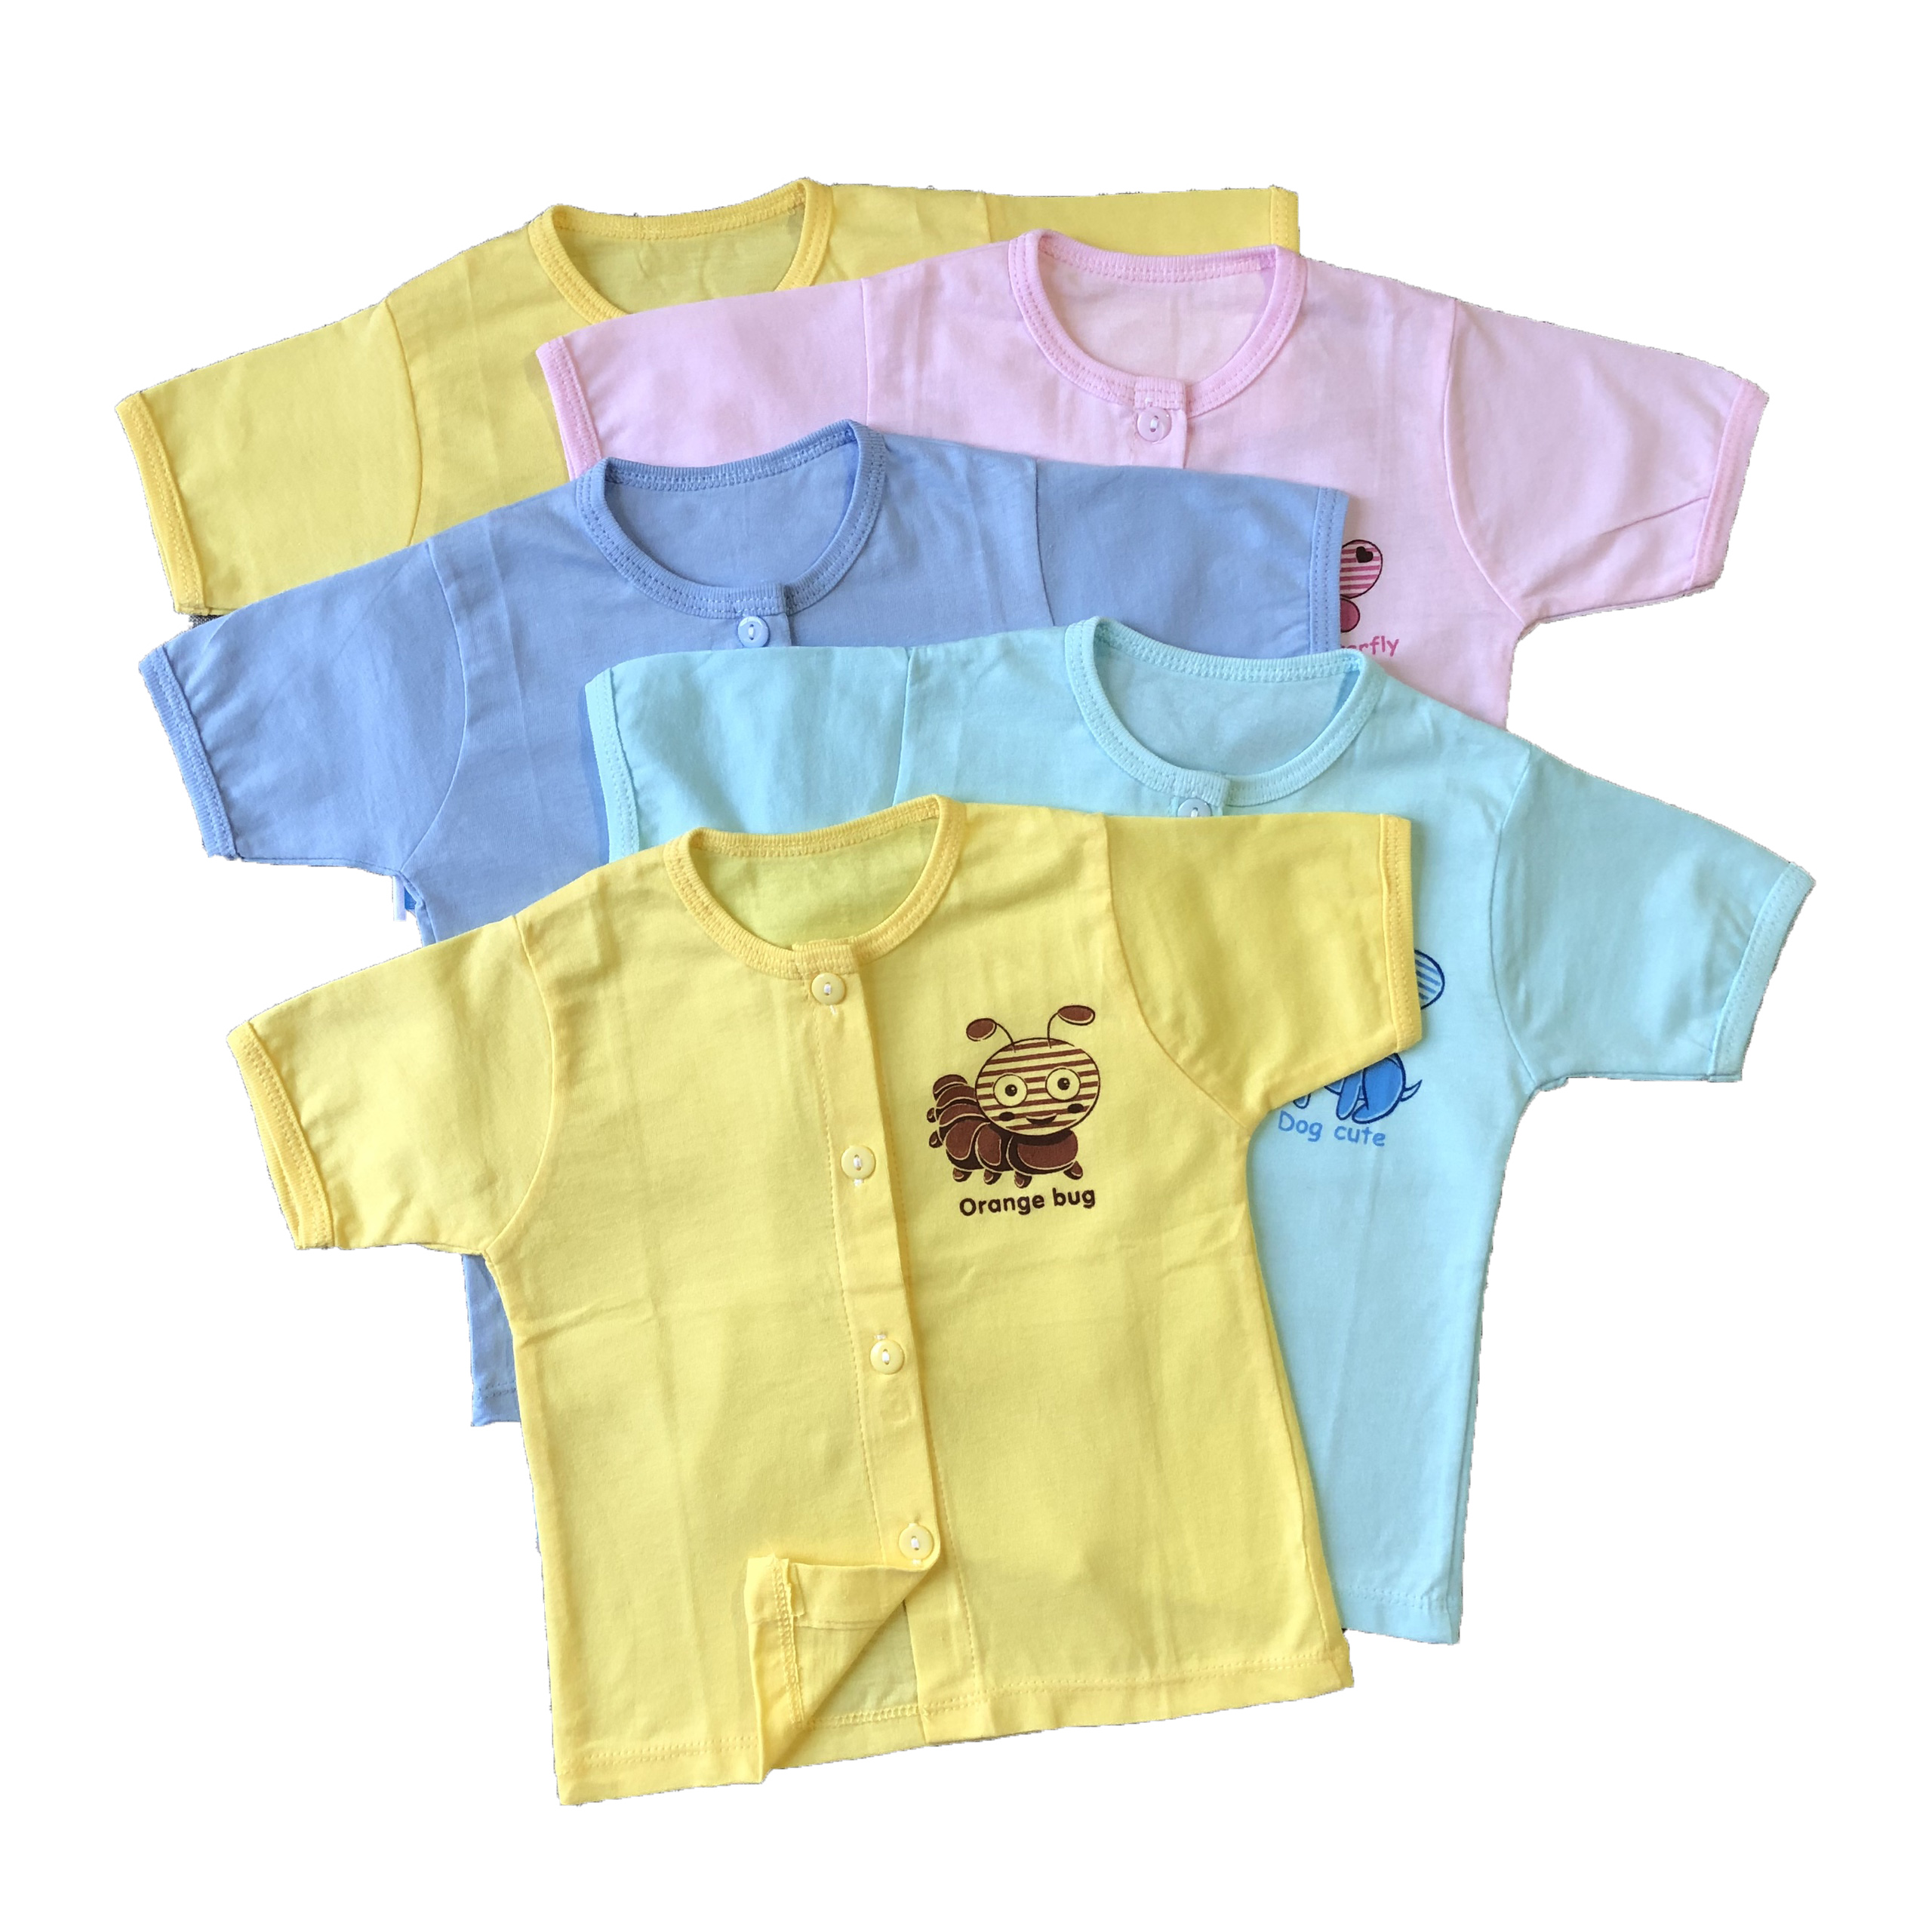 Combo 3 áo sơ sinh tay ngắn cài giữa màu Thái Hà Thịnh, chất vải 100% cotton mềm, mịn, thoáng mát, hàng Việt Nam chất lượng cao, hàng chính hãng